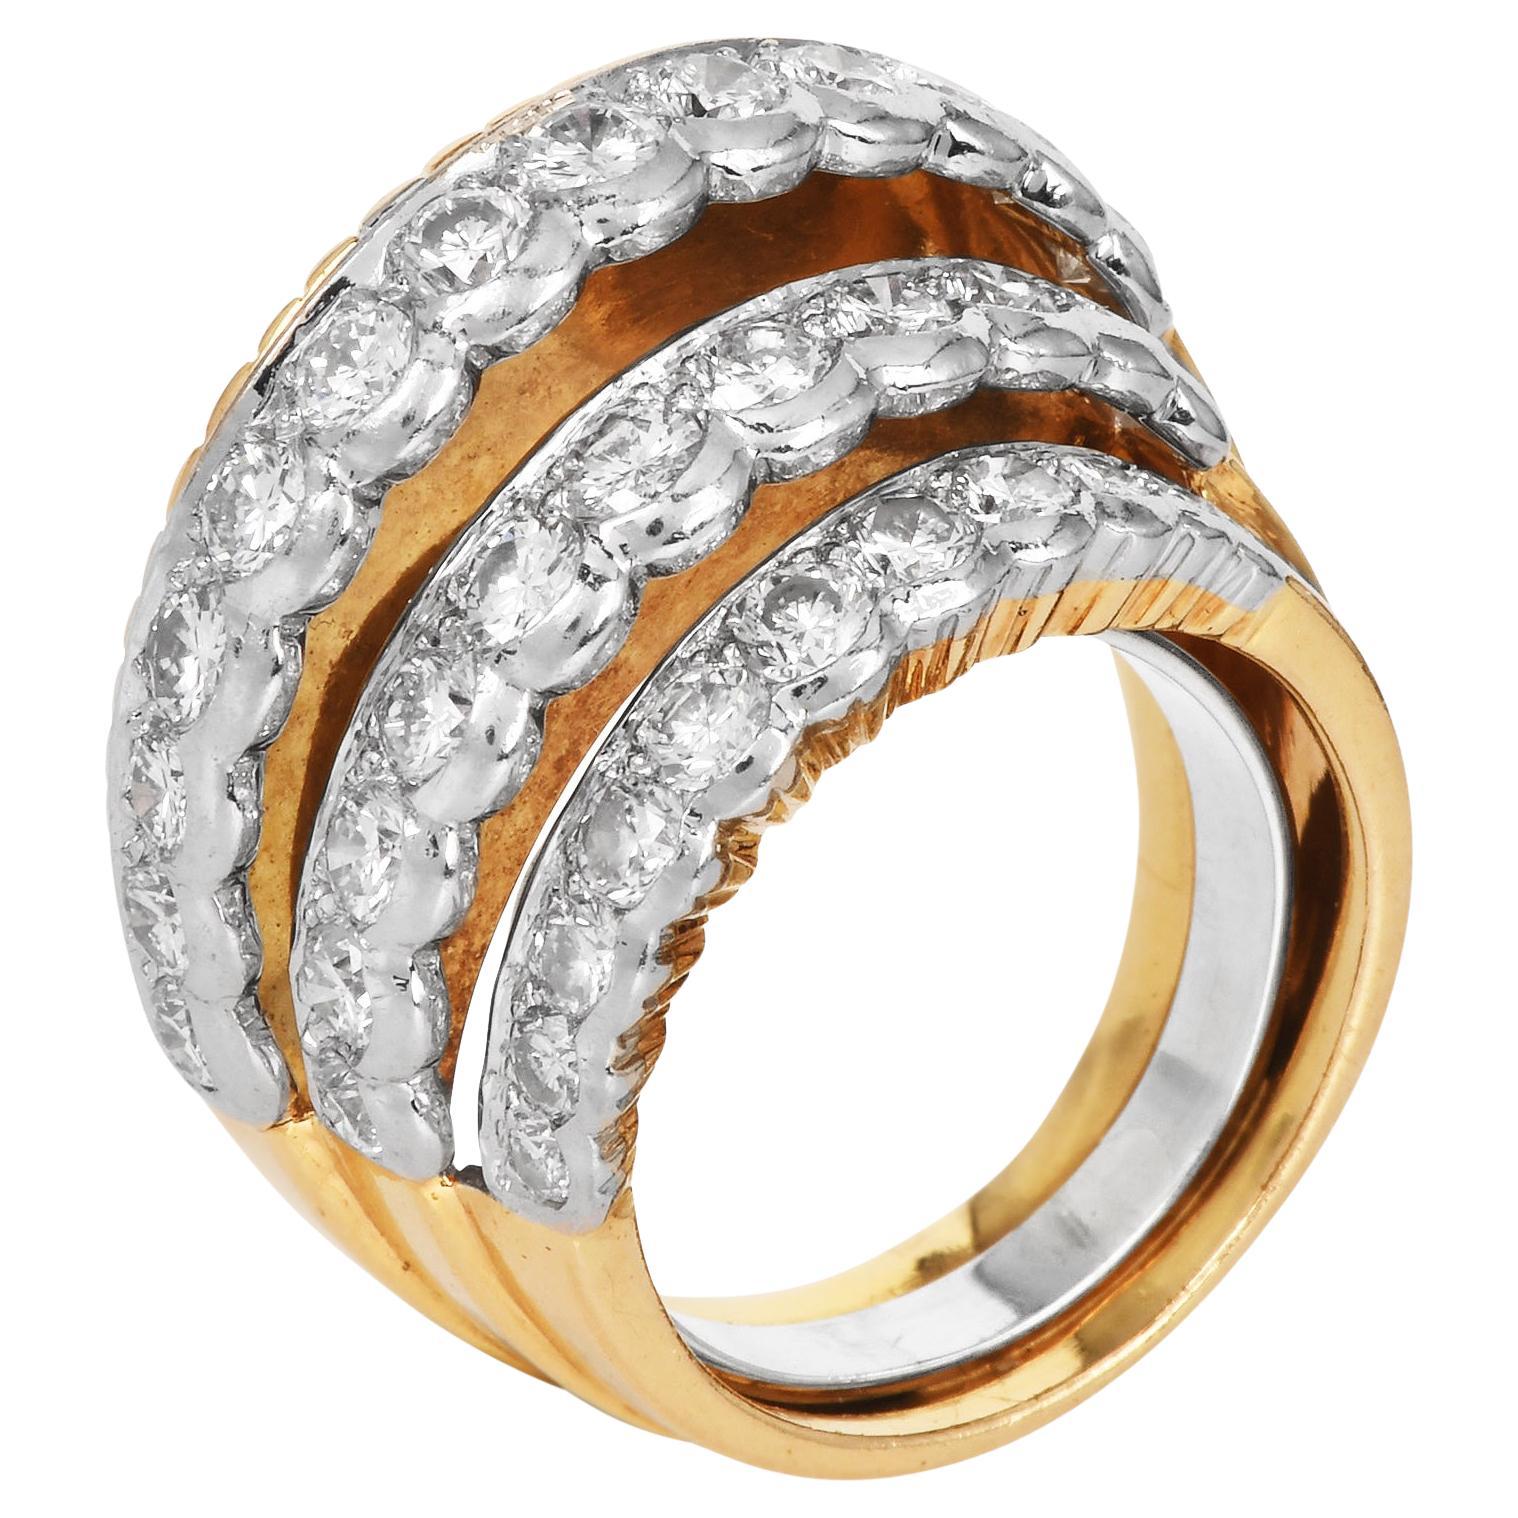 Der architektonisch gestufte Ring aus 18 Karat Gelbgold mit natürlichen Diamanten aus dem Hause Cartier Paris ist eine raffinierte Illusion.

Der dreilagige High Fan-Bogen ist mit Diamanten in Platin 35 Brillantrundschliff von ca. 2,86 Karat mit der